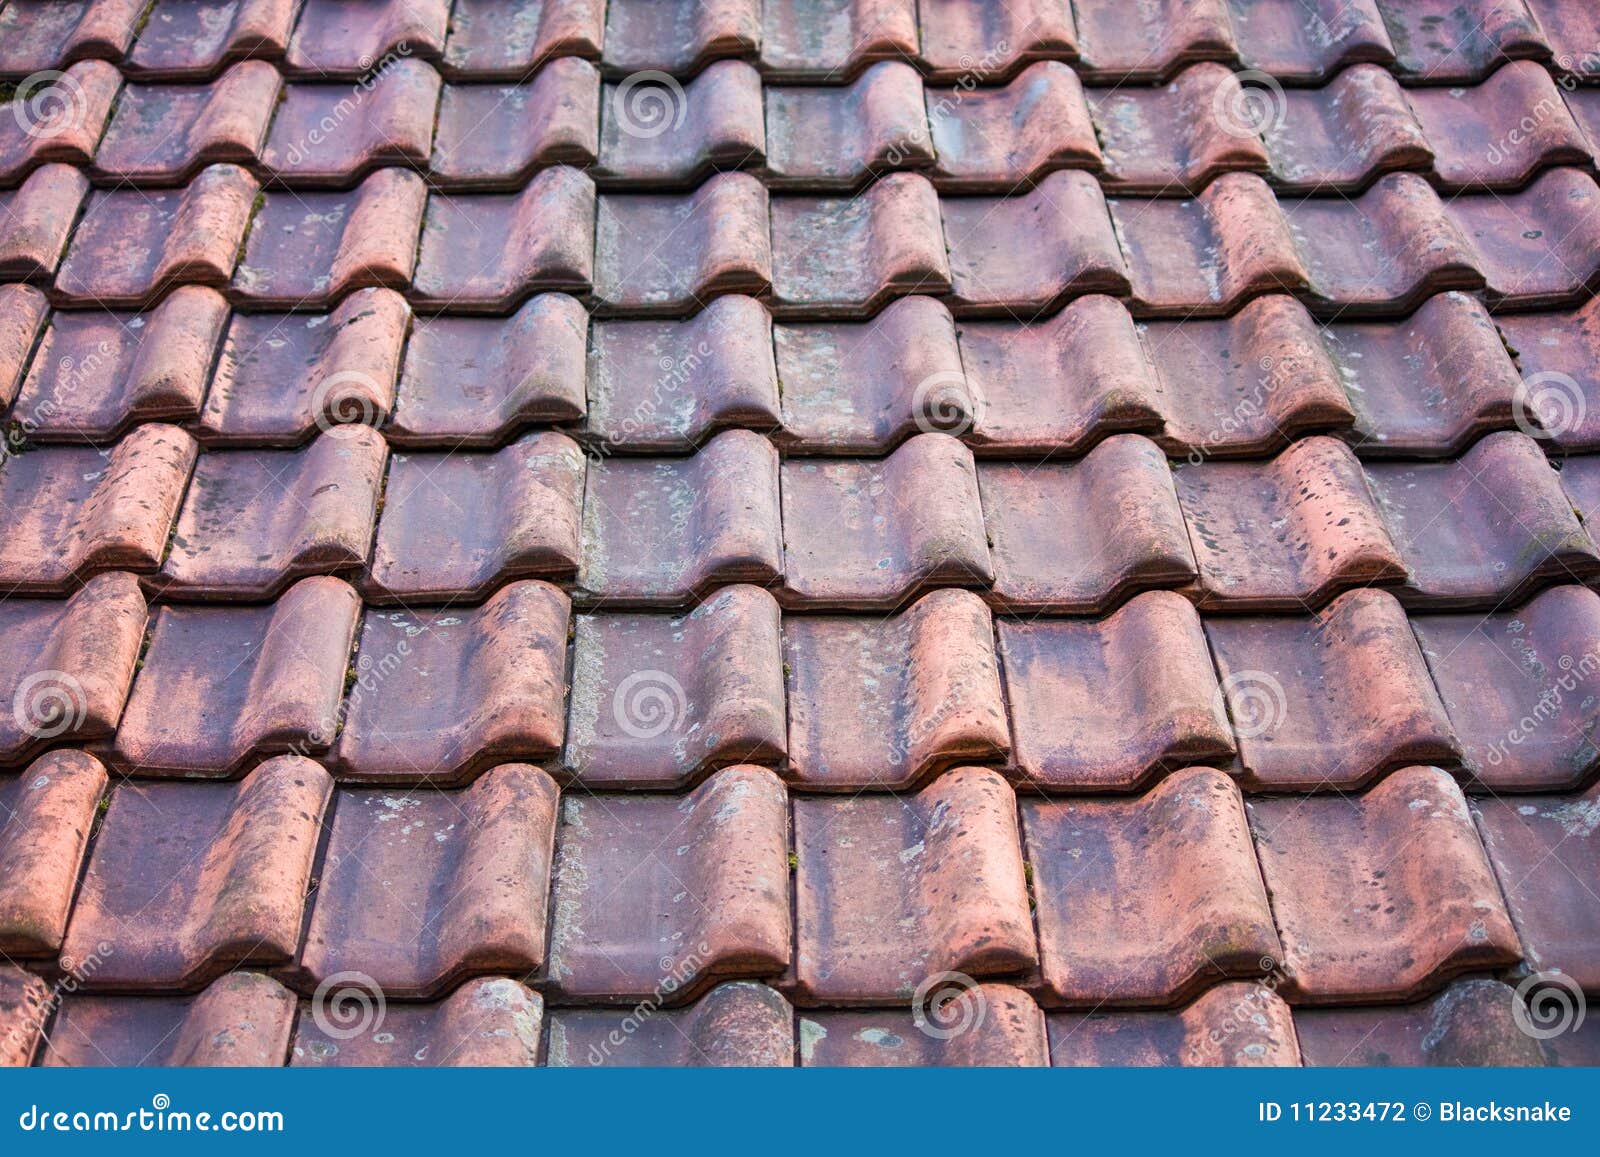 old potsherd roof texture